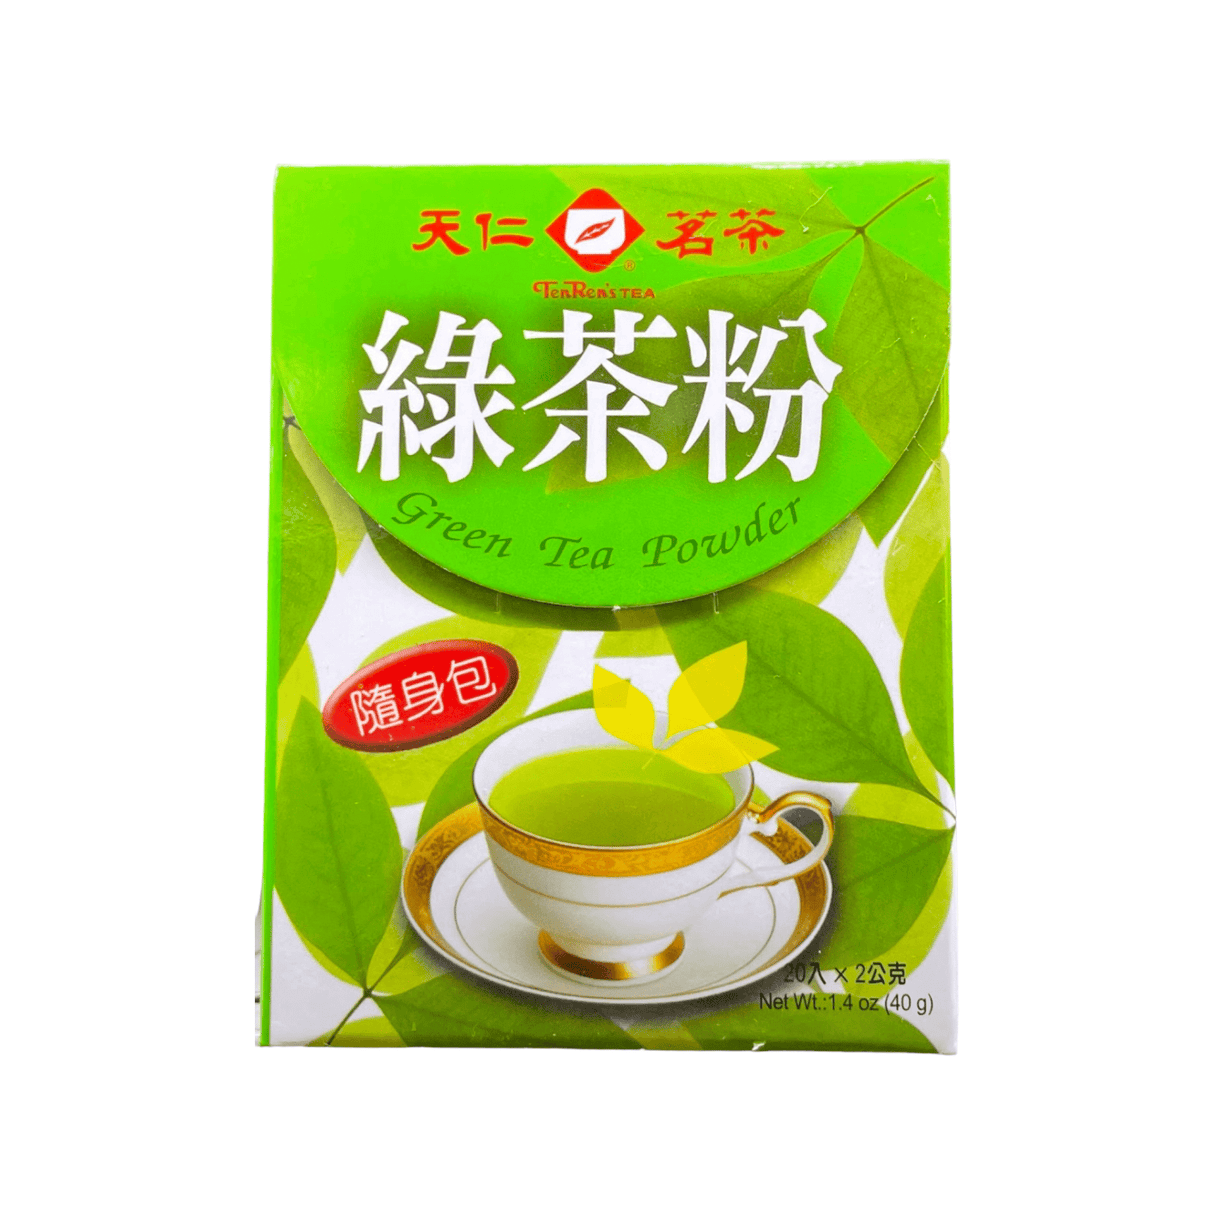 Ten Ren's Tea Green Tea Powder